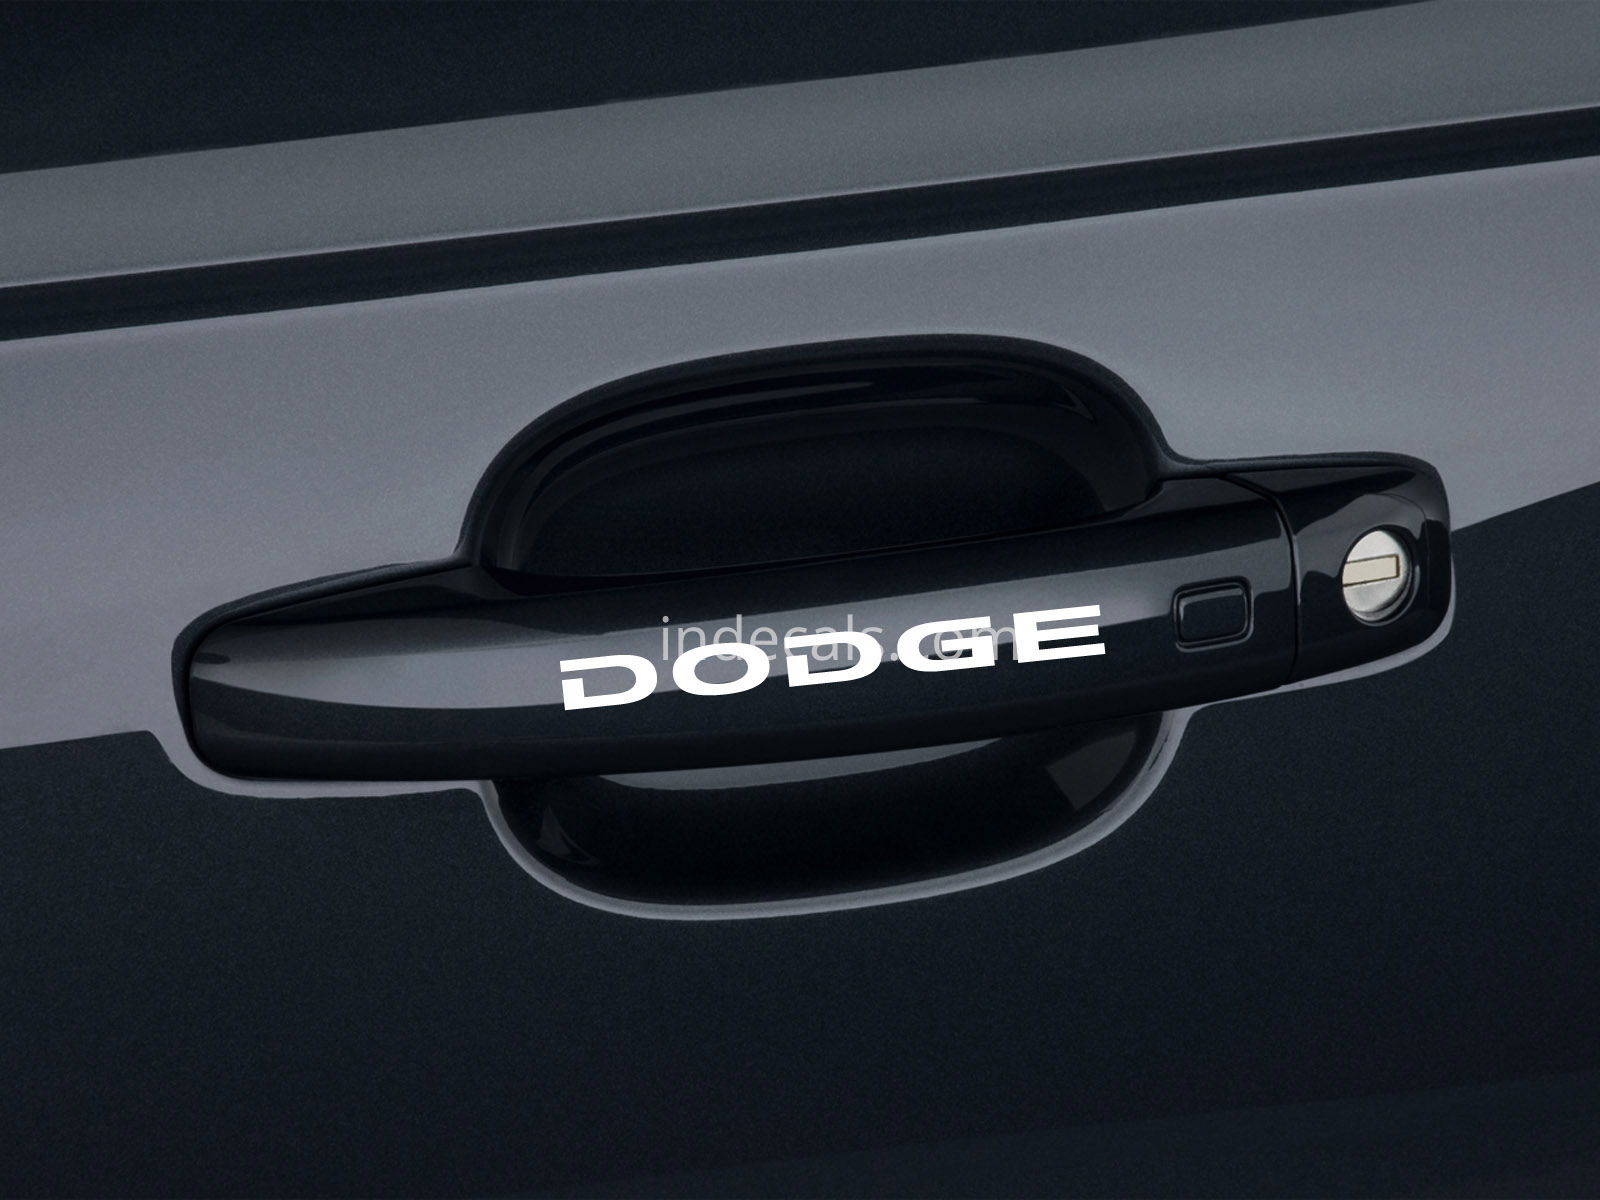 6 x Dodge Stickers for Door Handles - White